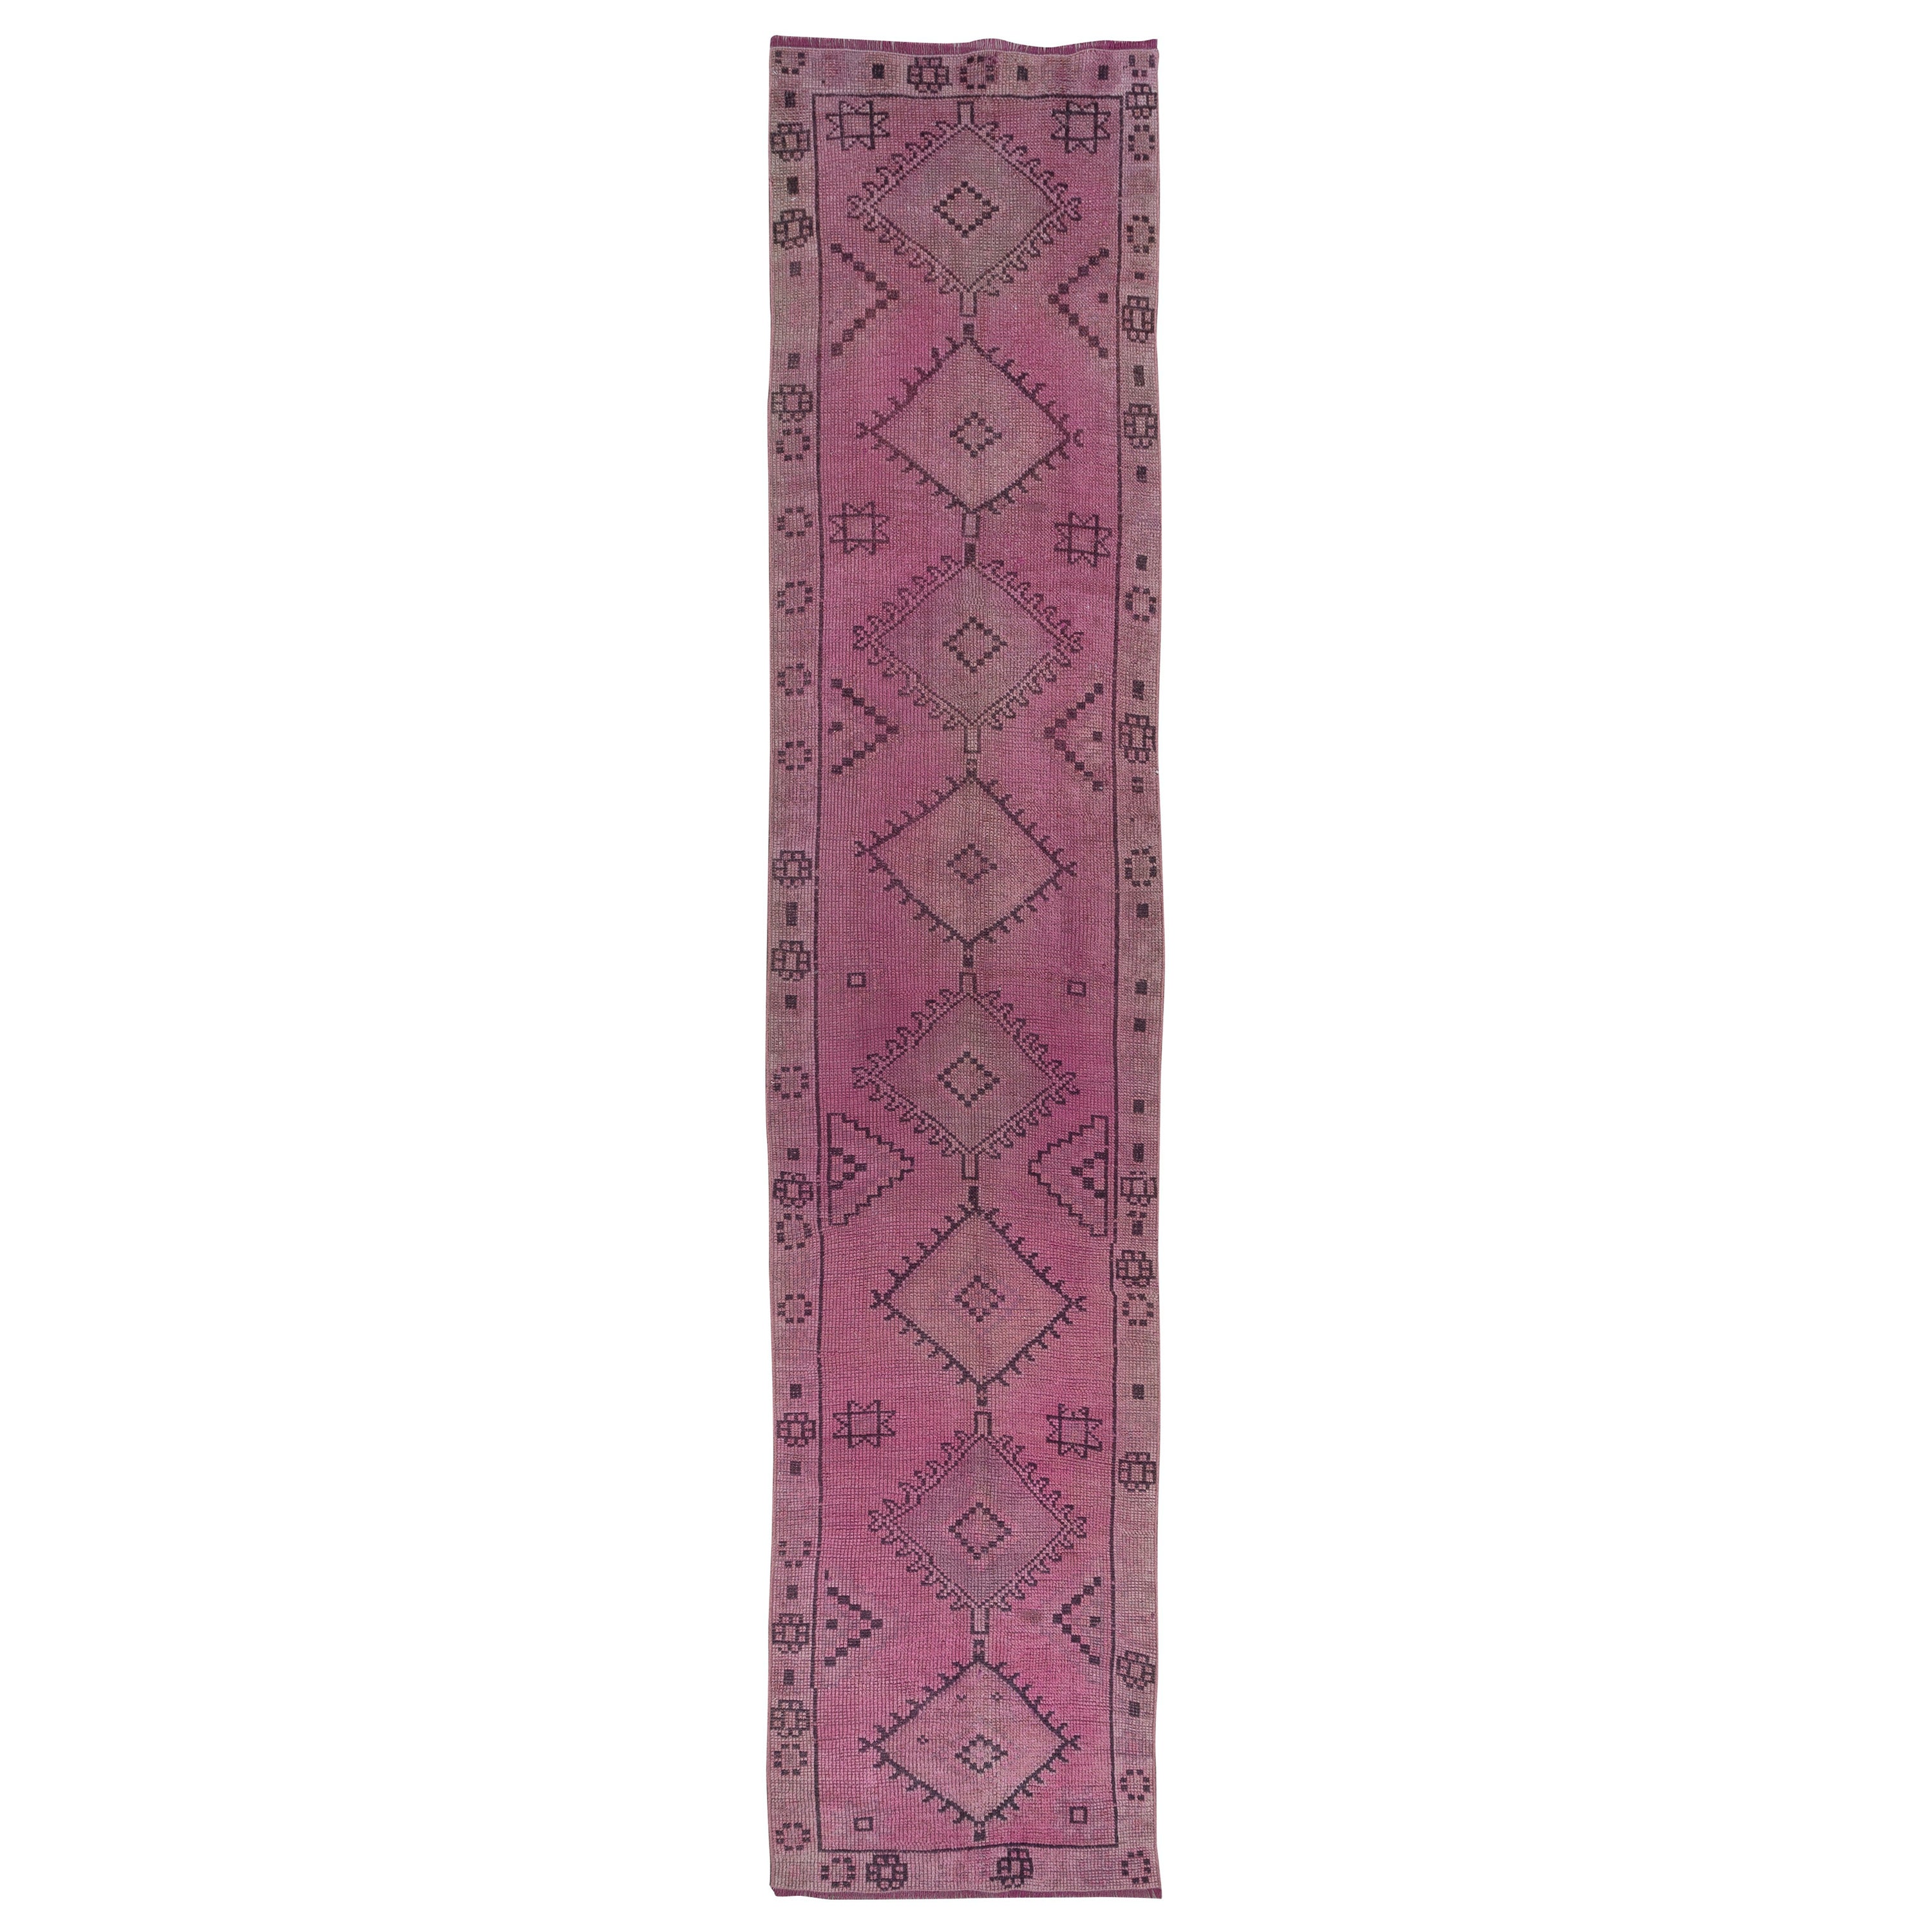 2.8x12,5 Ft Handgefertigter rosa Läufer für Flur, moderner türkischer Corridor-Teppich